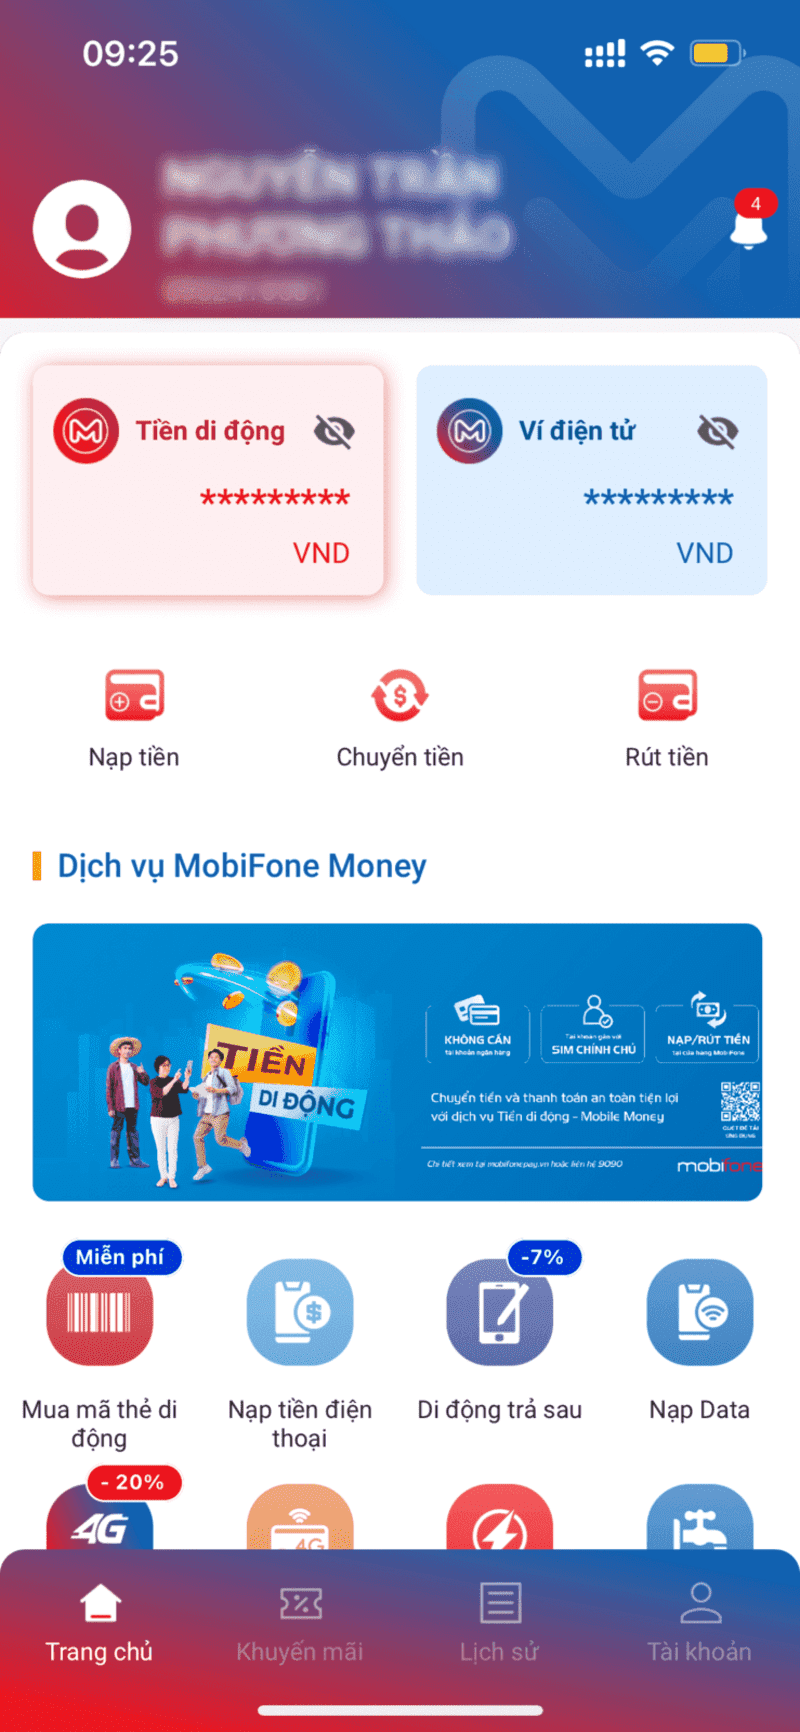 Chuyển tiền bằng tiền di động MobiFone Money